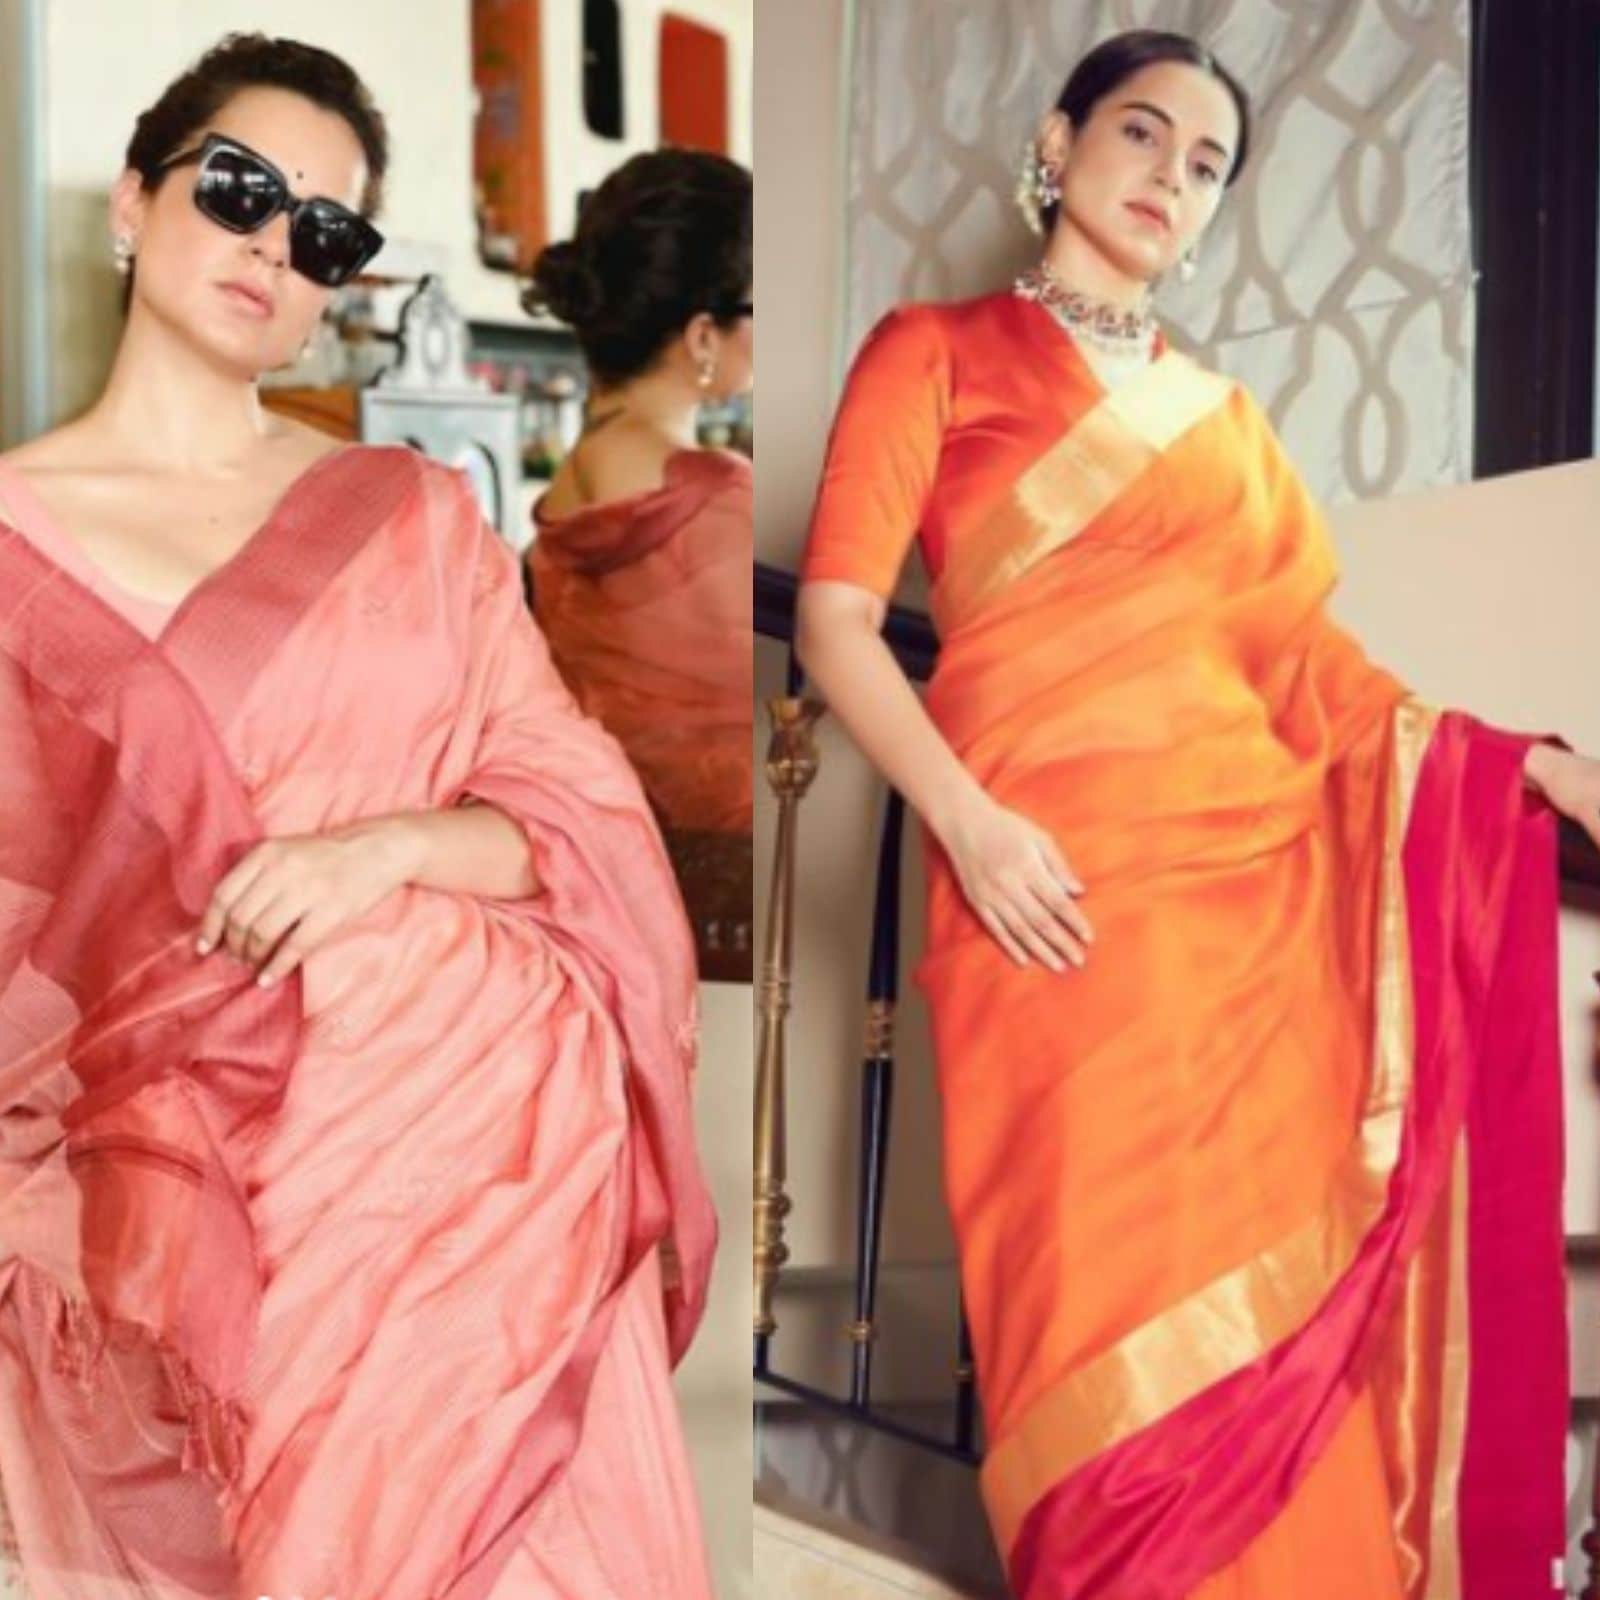  मुंबईः बॉलीवुड की 'क्वीन' कंगना रनौत (Kangana Ranaut) अपनी बेहतरीन एक्टिंग के साथ ही अपने फैशन सेंस के चलते भी चर्चा में रहती हैं. खासकर एक्ट्रेस के साड़ी लुक्स. कंगना जब भी साड़ी (Kangana Ranaut Saree Looks) पहनकर निकलती हैं, हर किसी की निगाहें उन पर टिक जाती हैं. फैन भी खुद को उनकी तारीफ करने से नहीं रोक पाते. हाल ही में कंगना रनौत ने लैक्मे फैशन वीक 2022 में भी साड़ी में जलवे बिखेरे. जहां, उनका लुक चर्चा में आ गया. इस दौरान कंगना ने खादी की आइवरी साड़ी पहनी थी. जिसमें वह बेहद ग्रेसफुल लग रही थीं. (फोटो साभारः इंस्टाग्रामः @kanganaranaut)